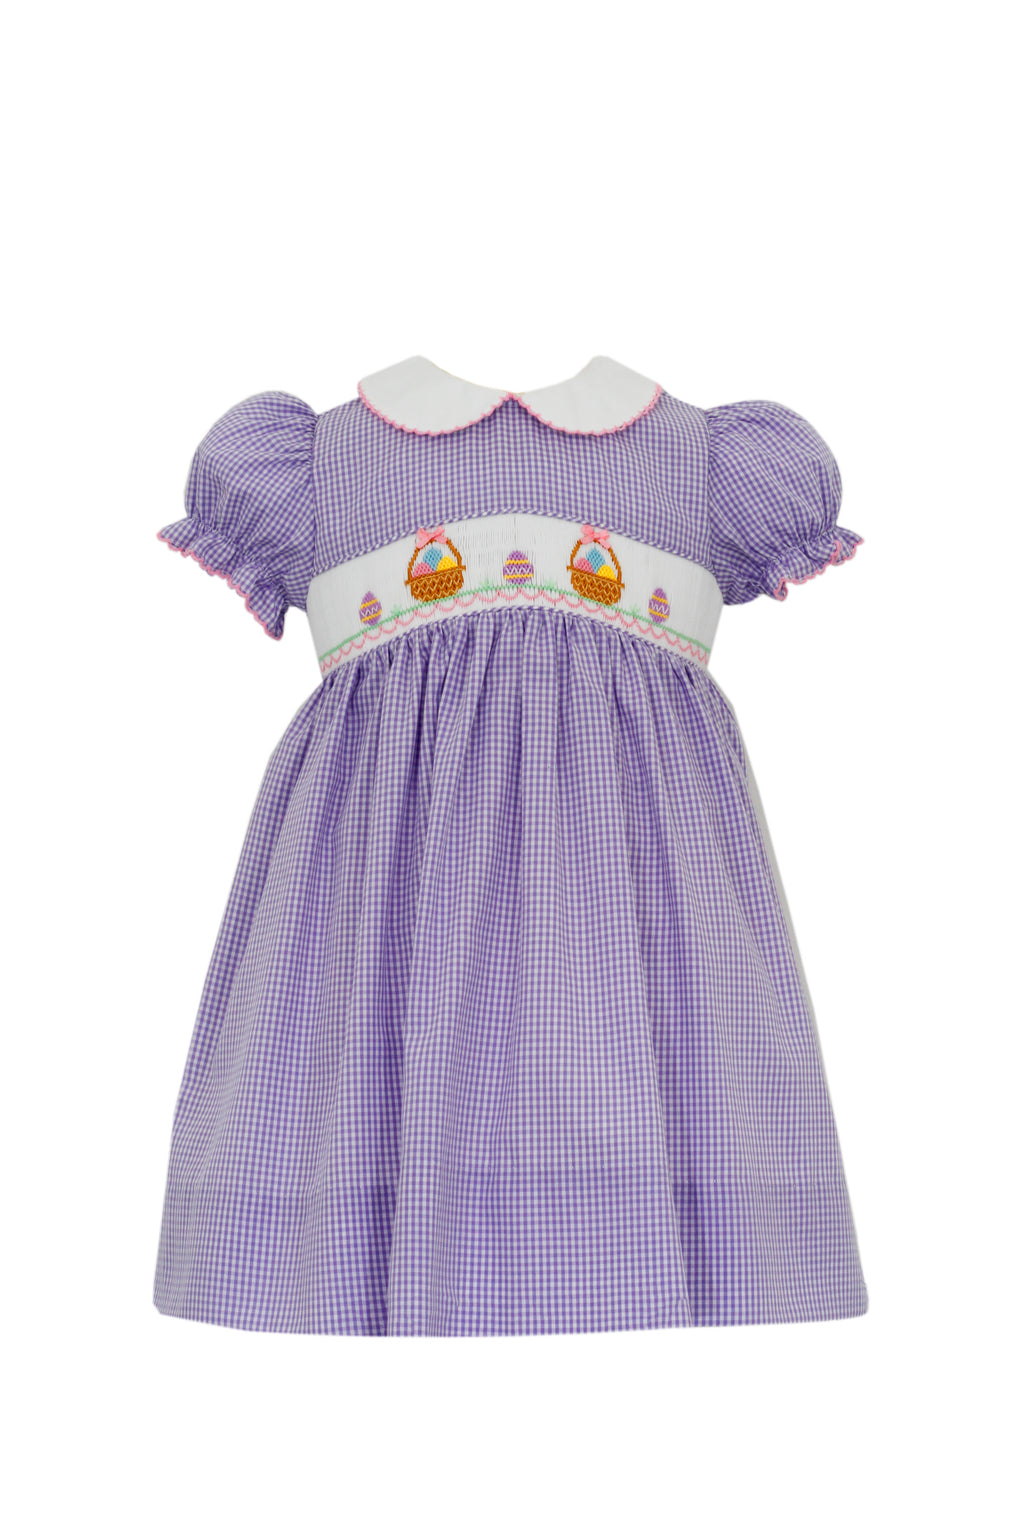 Easter Baskets Lilac Gingham Smocked Dress